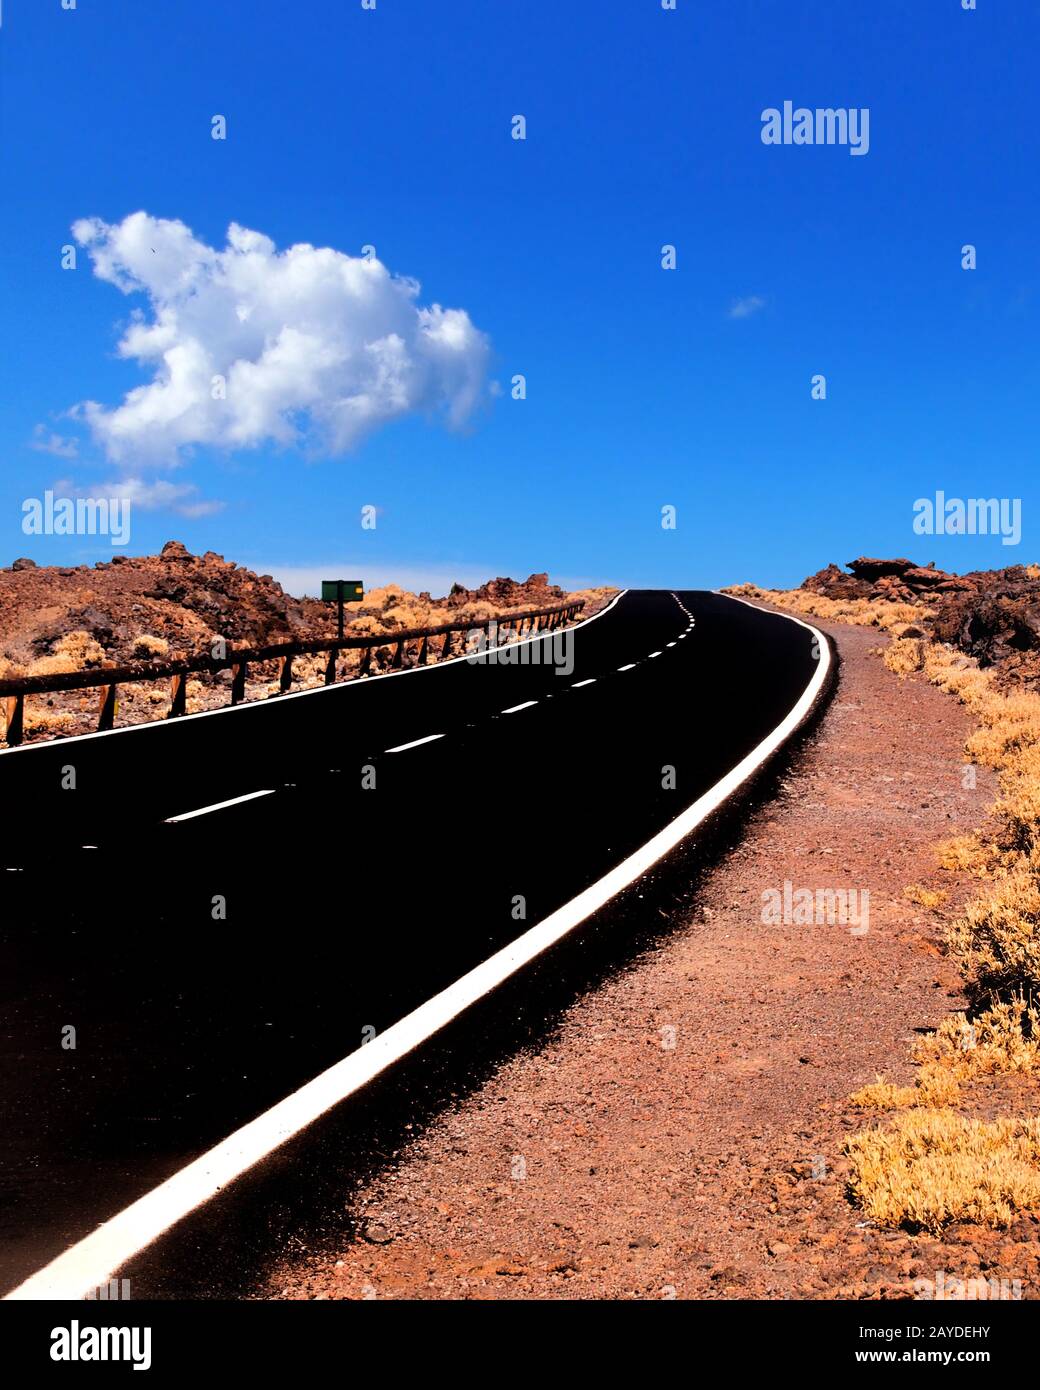 Eine zweispurige, leere Straße, die sich in einer zerklüfteten Wüstenlandschaft mit blauem bewölktem Himmel zum Horizont erstreckt Stockfoto